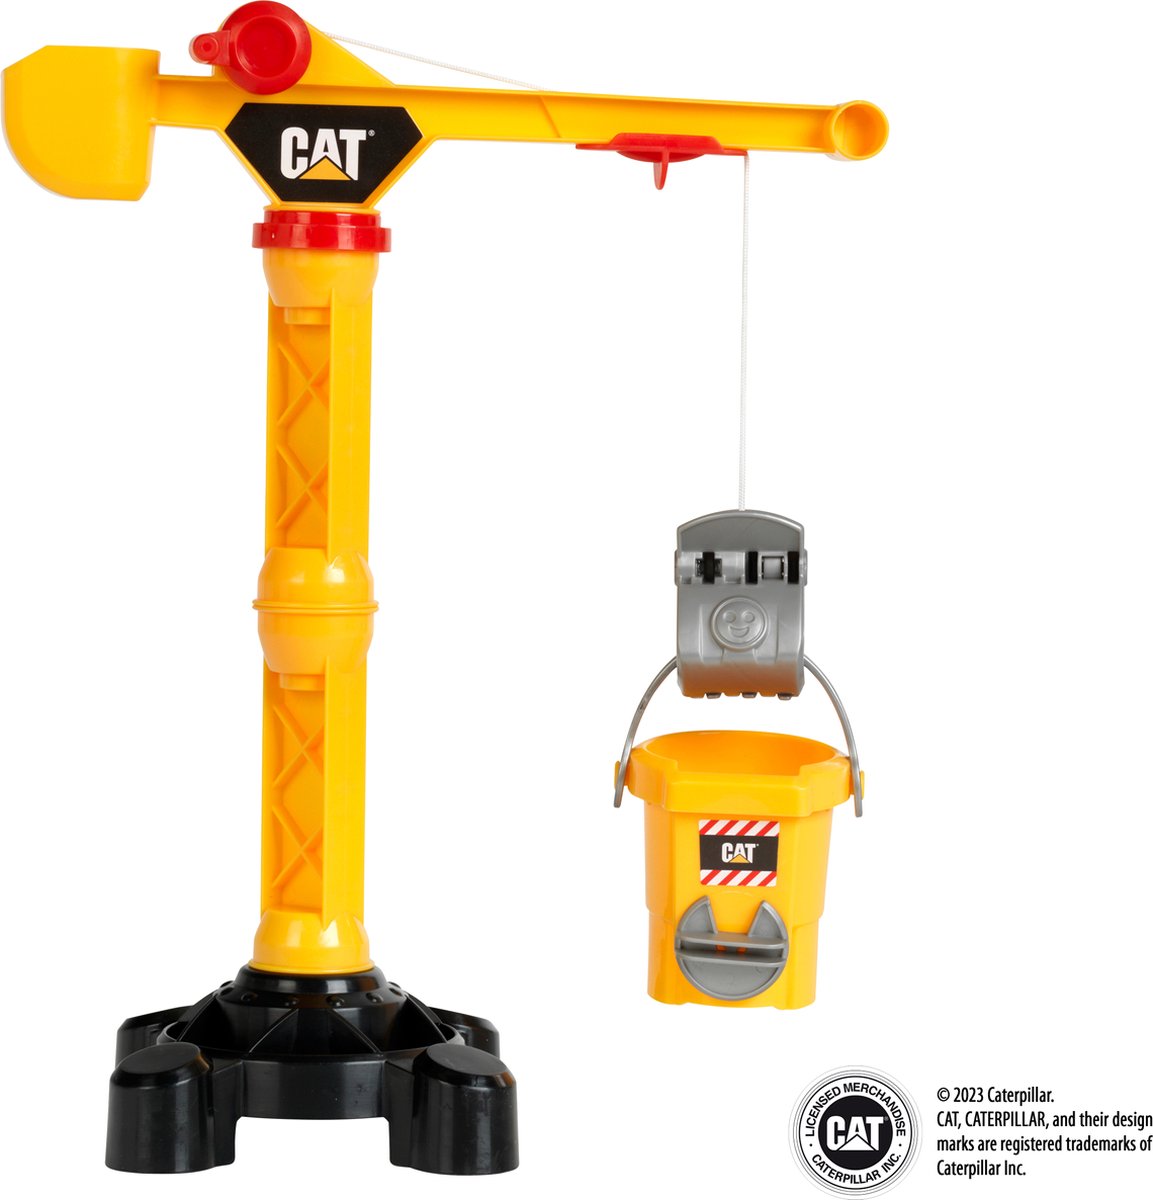 Klein Toys Cat bouwkraan - 42 cm hoog - incl. silo en grijper - geel zwart